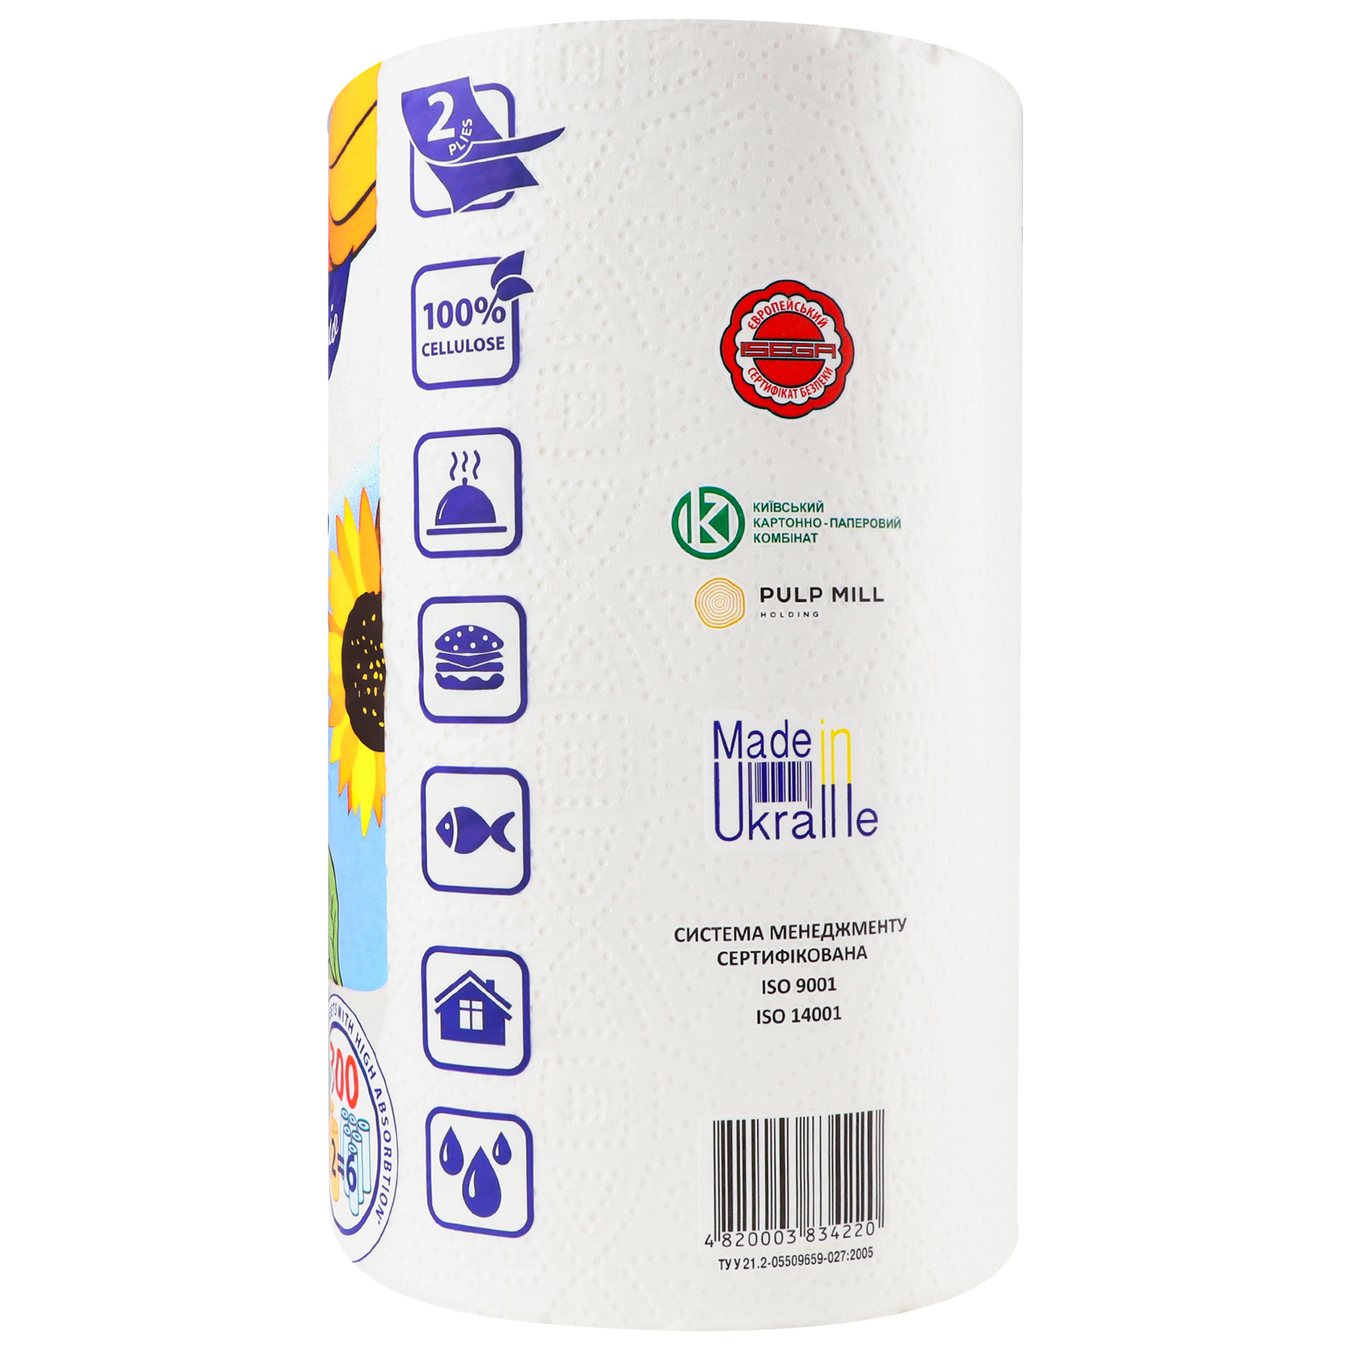 Nailzi 2-layer cellulose towel Divo Premio Maxi white 2 pcs 2